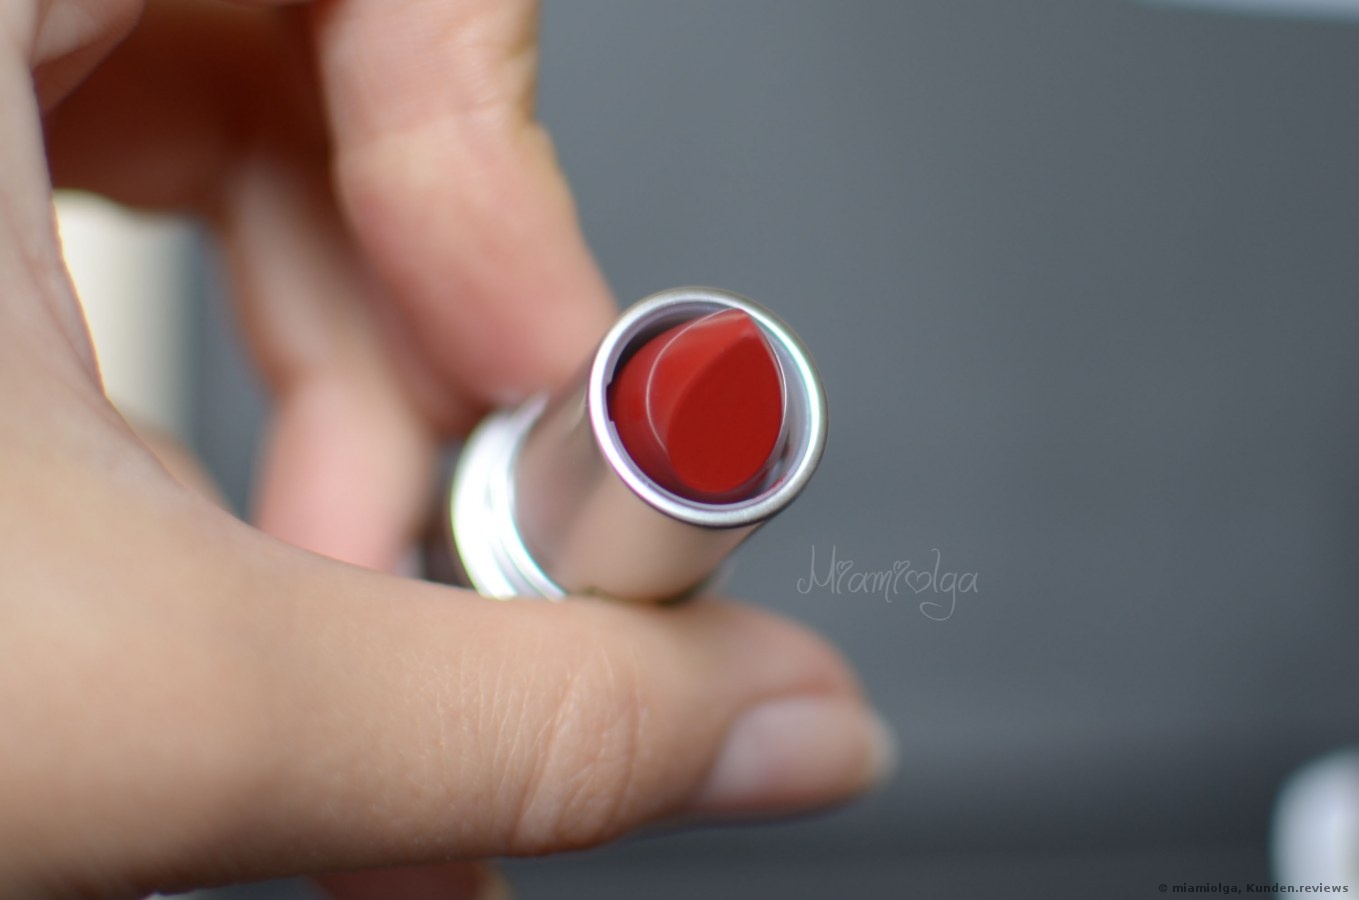 MAC Lippenstift Matte Lipstick in Russian Red